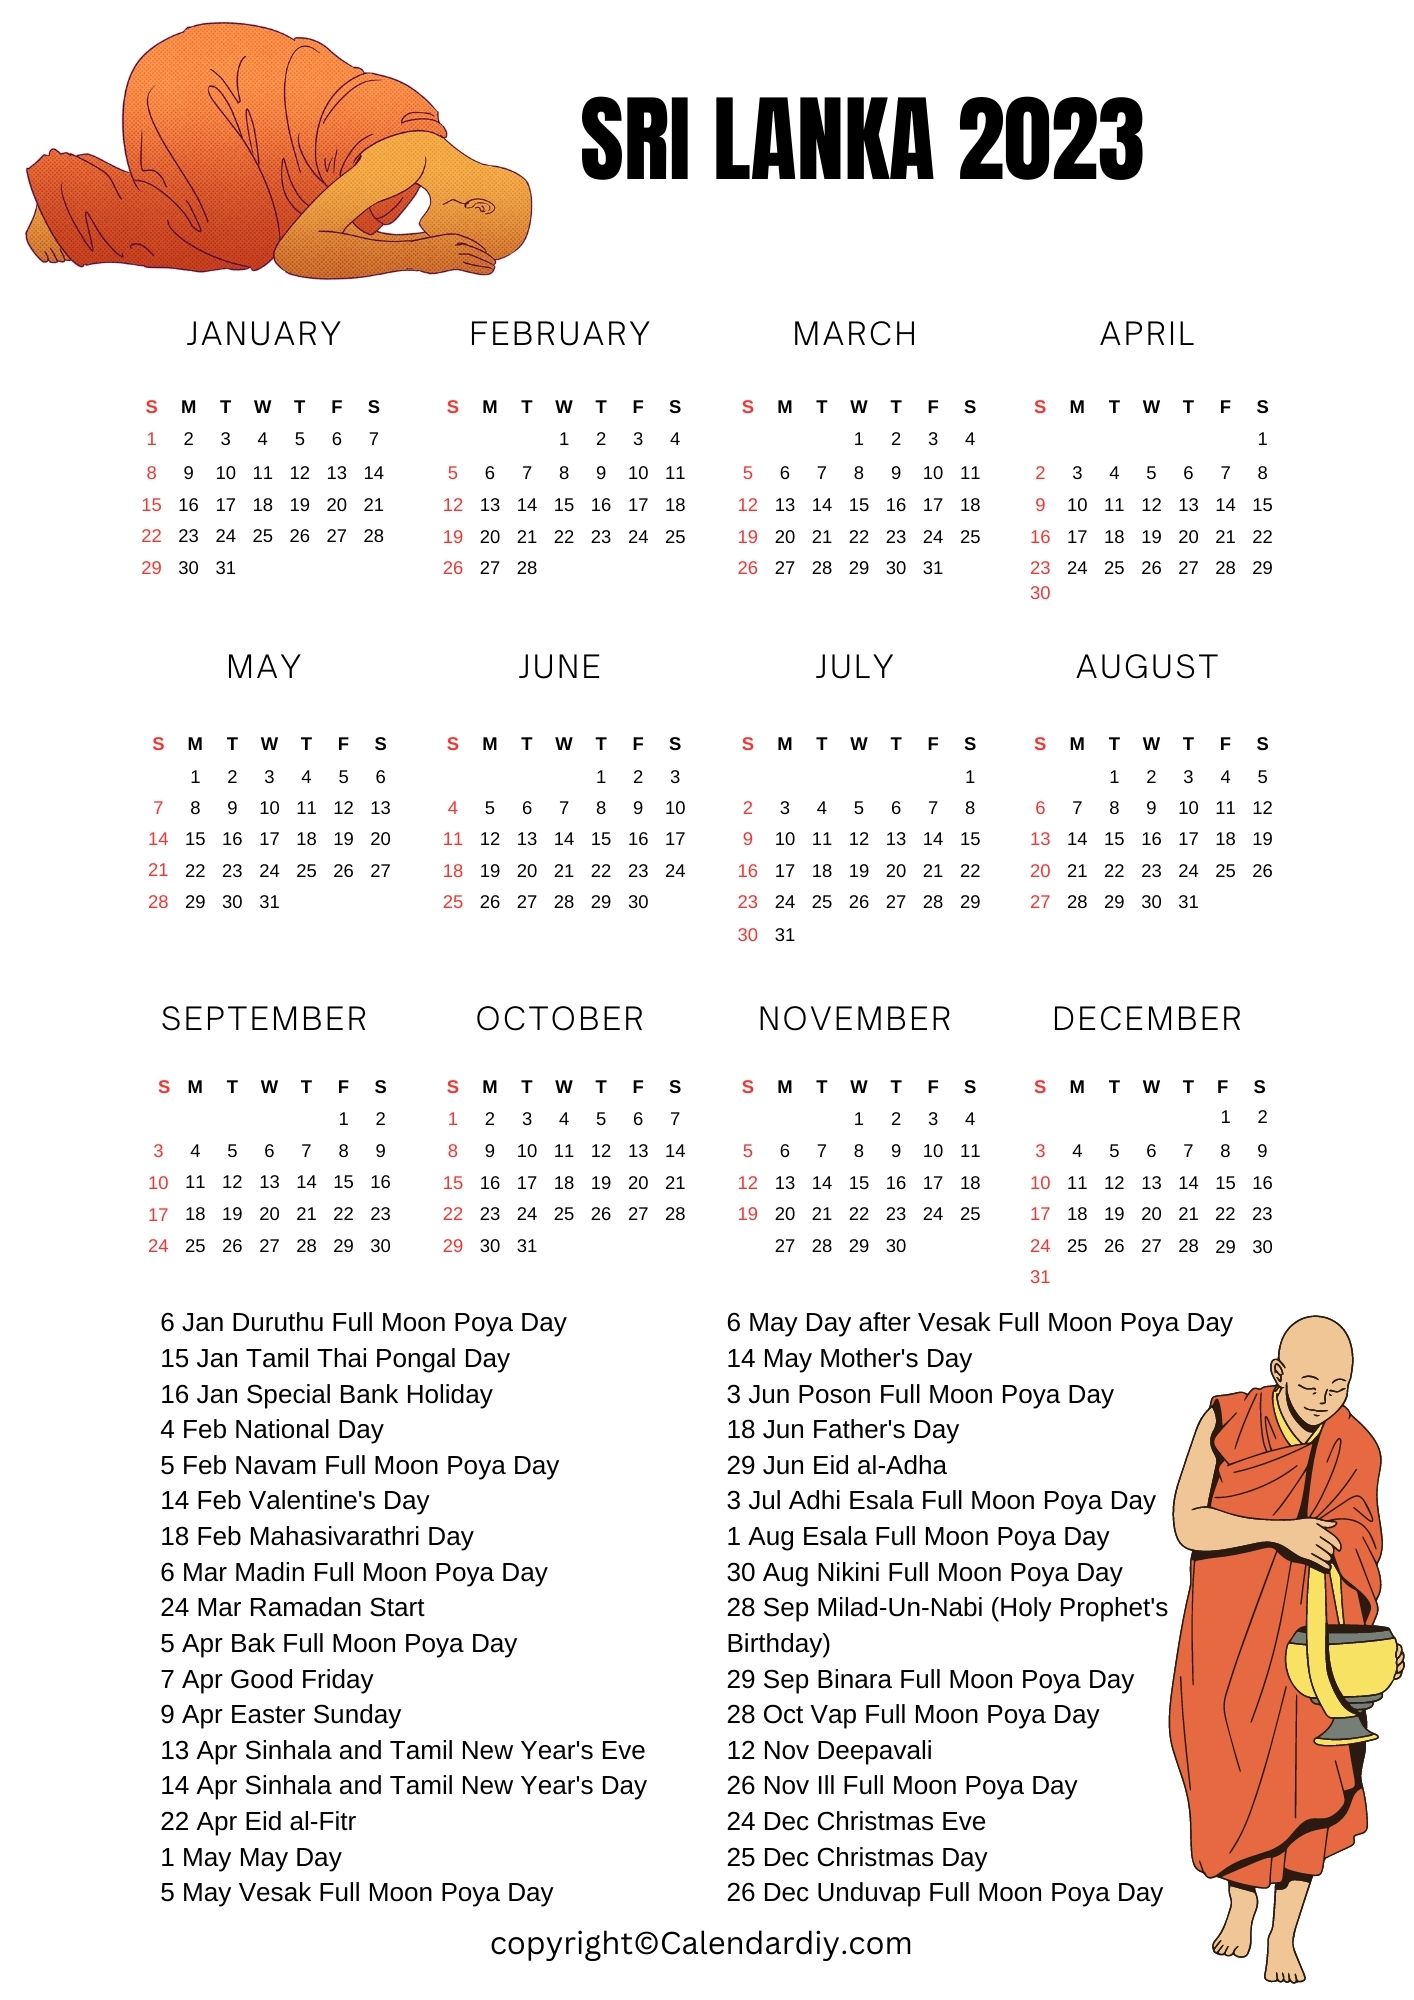 Sri Lanka 2023 Calendar with Public Holidays in PDF